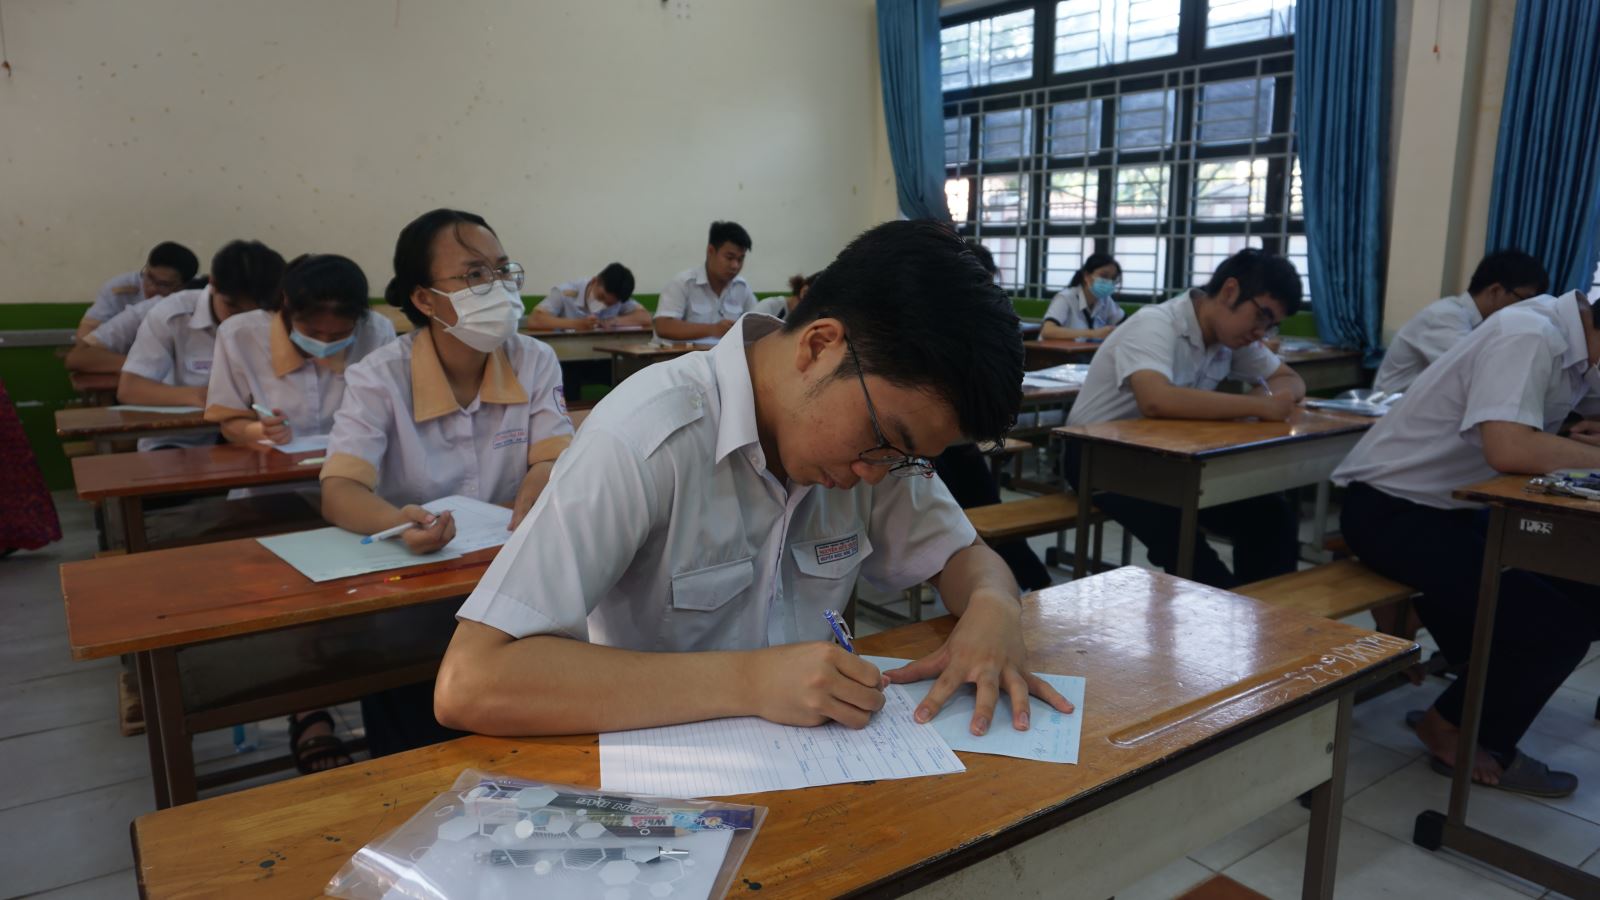 Xác định thí sinh ở Cao Bằng làm lọt đề thi Ngữ Văn, đình chỉ thi các môn còn lại - ảnh 2